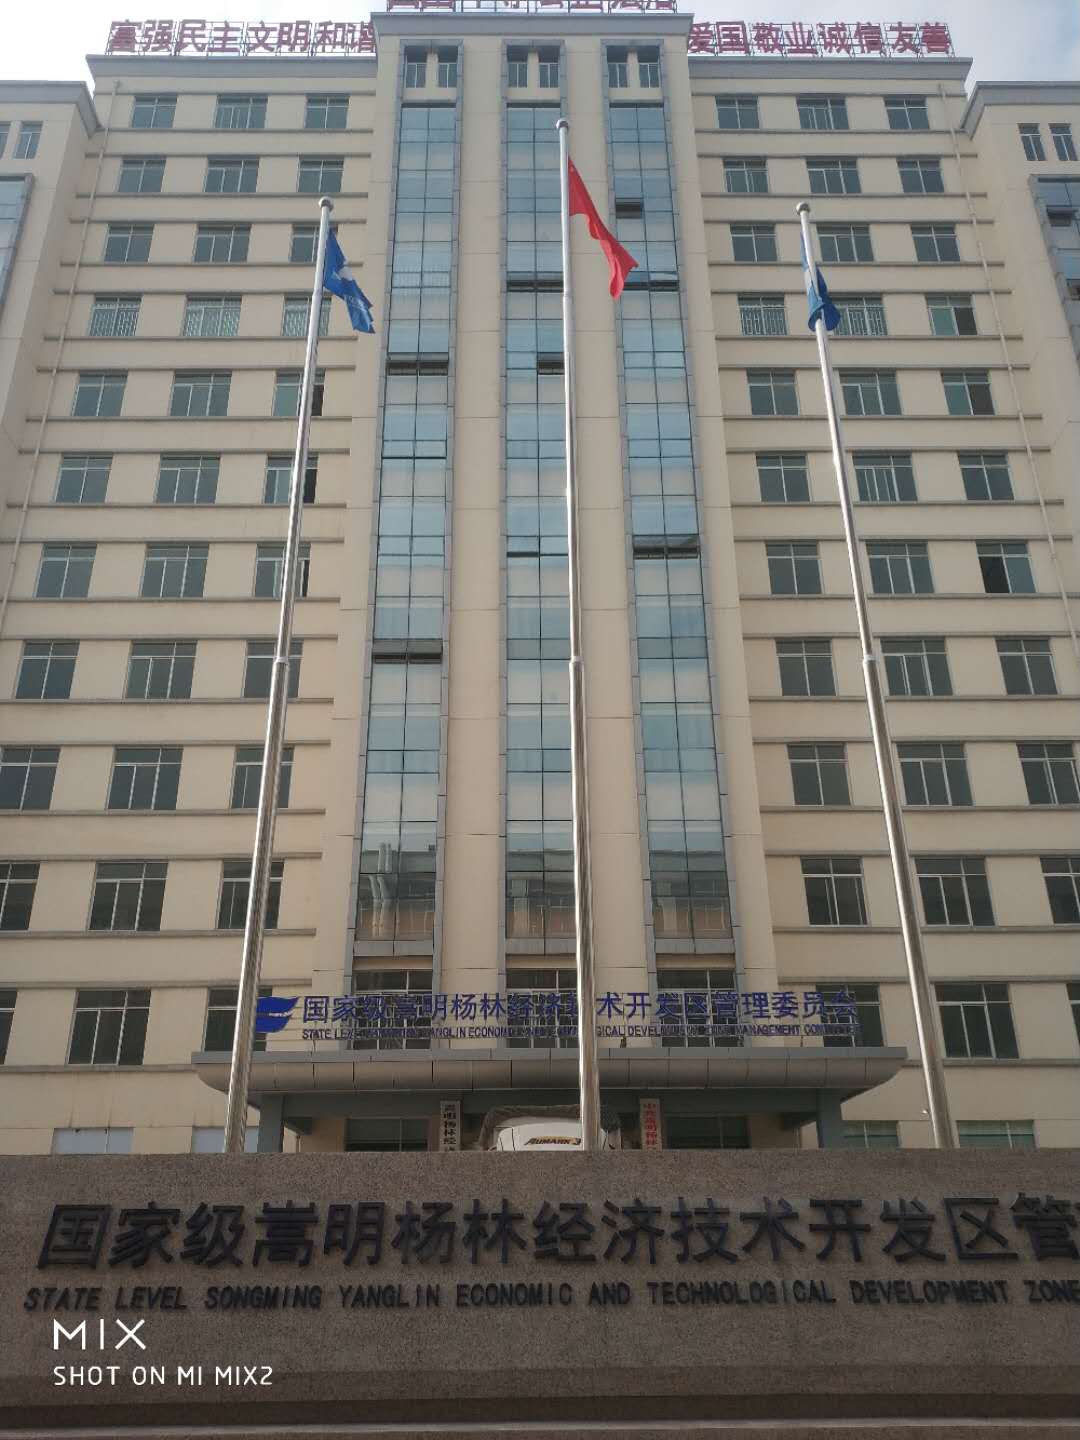 嵩明楊林經濟技術開發區